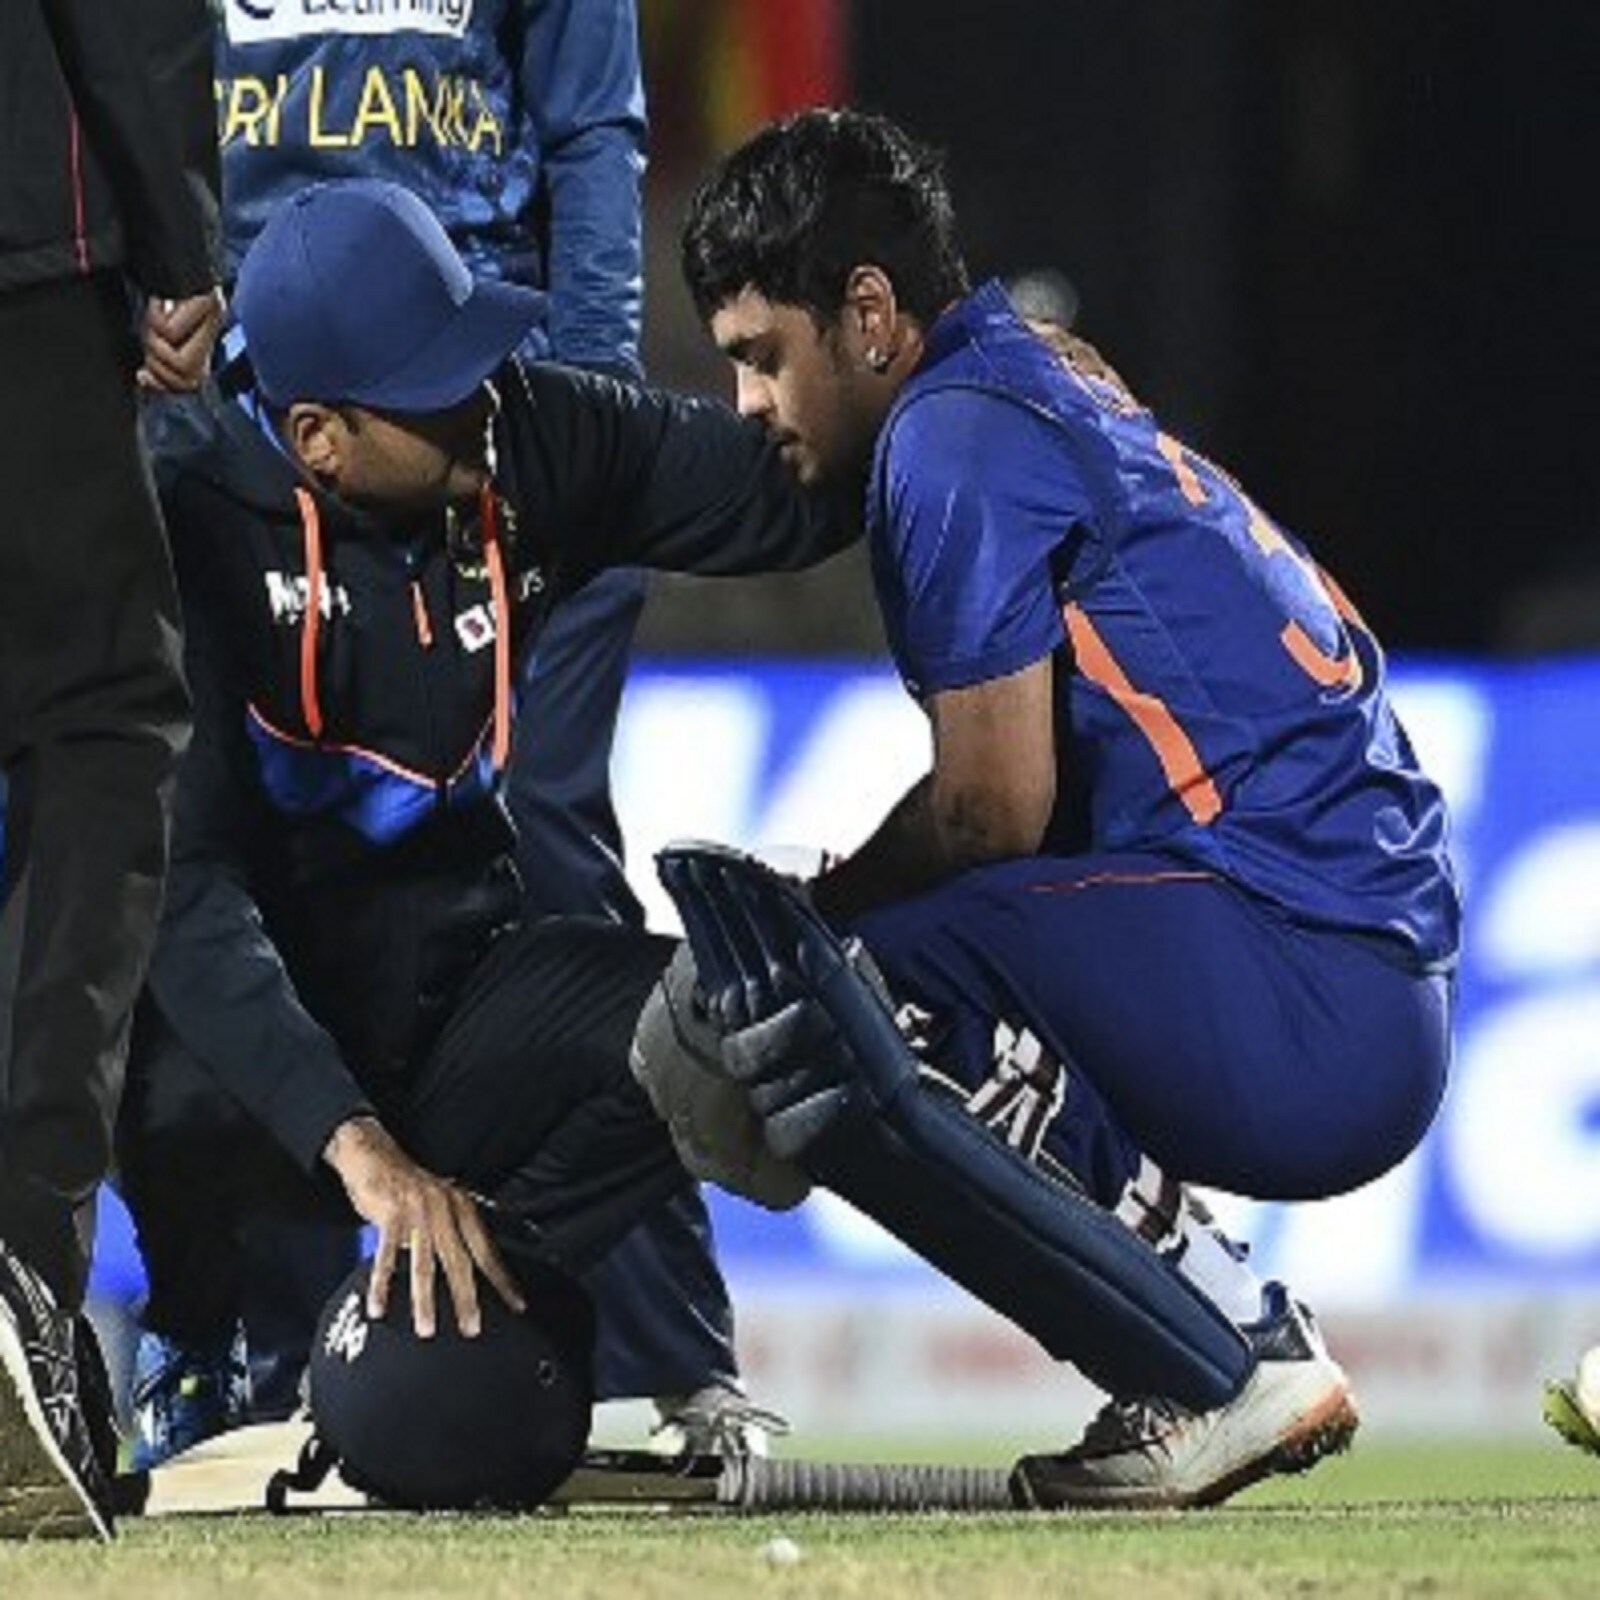  नई दिल्‍ली. ईशान किशन को श्रीलंका के खिलाफ दूसरे टी20 मैच में सिर पर गेंद लगने के बाद अस्‍पताल में भर्ती कराया गया. ईशान को कांगड़ा के एक अस्‍पताल में भर्ती कराया गया. उनके अलावा श्रीलंकाई बल्‍लेबाज दिनेश चांदीमल को भी इसी अस्‍पताल में लाया गया. (PC:AFP)